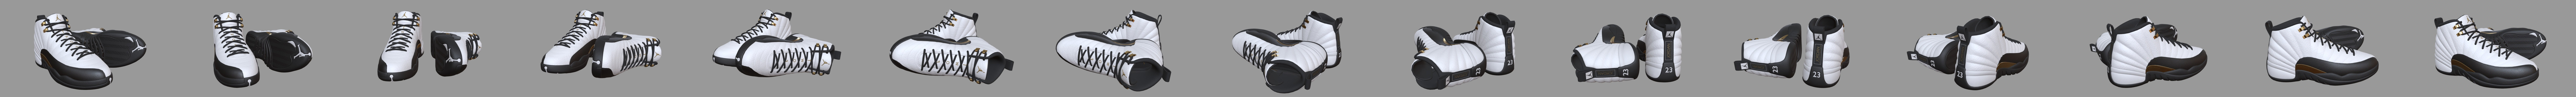 Air Jordan 12 Retro 3D model 3D printable